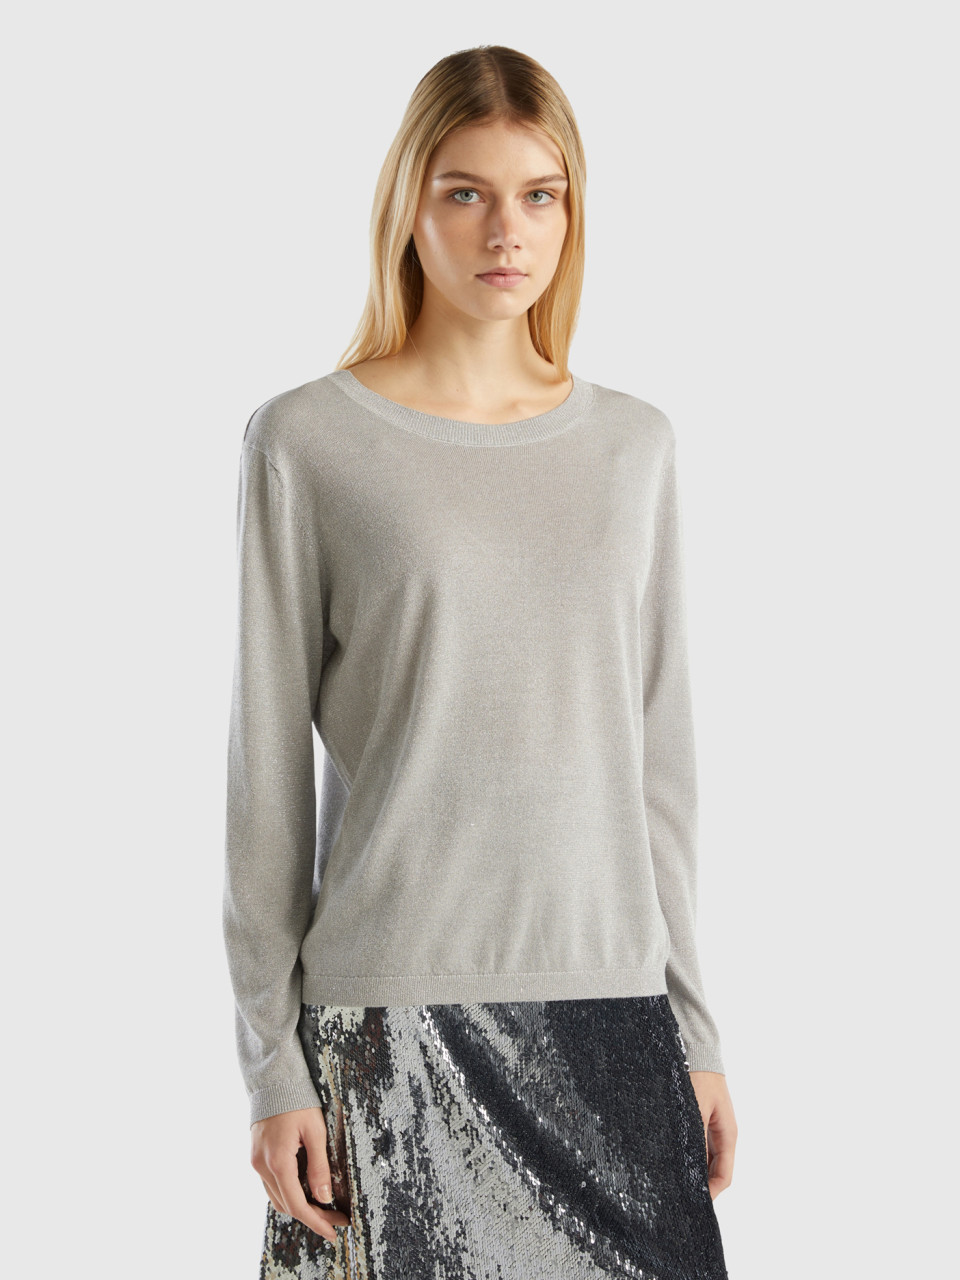 Benetton, Viscose Blend Sweater With Lurex, Light Gray, Women